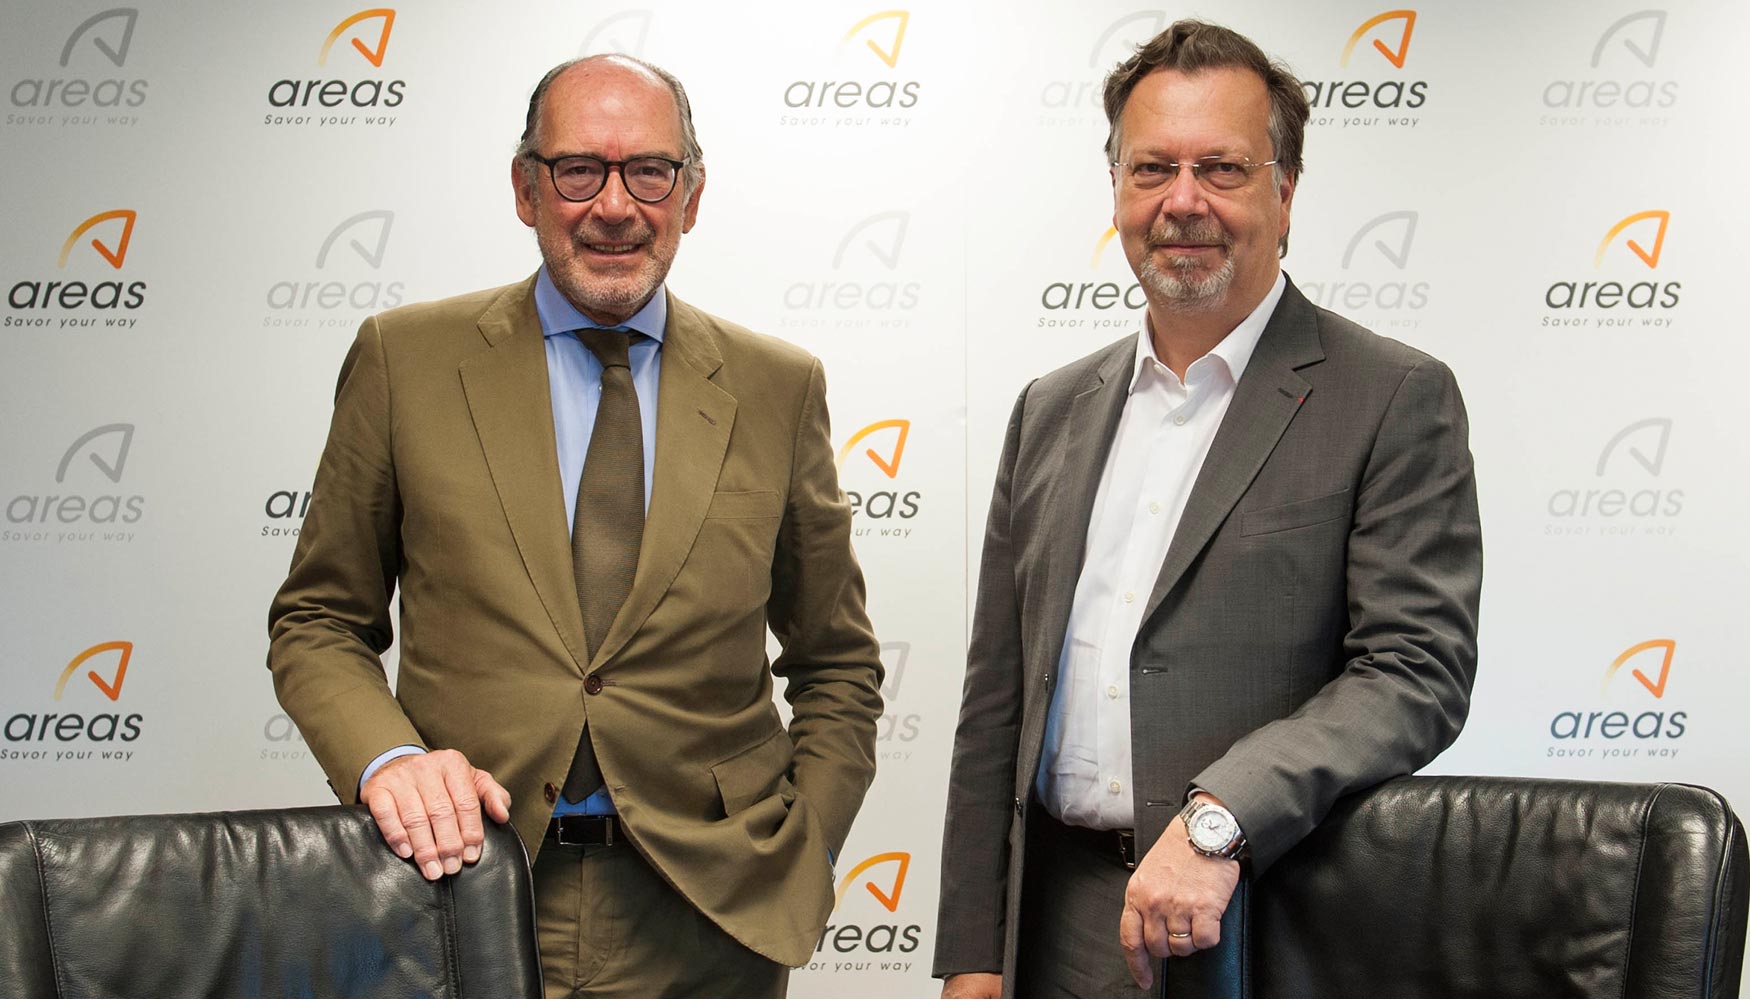 De izquierda a derecha, Pedro Fontana, CEO de Areas, y Philippe Salle, presidente y CEO de Elior Group